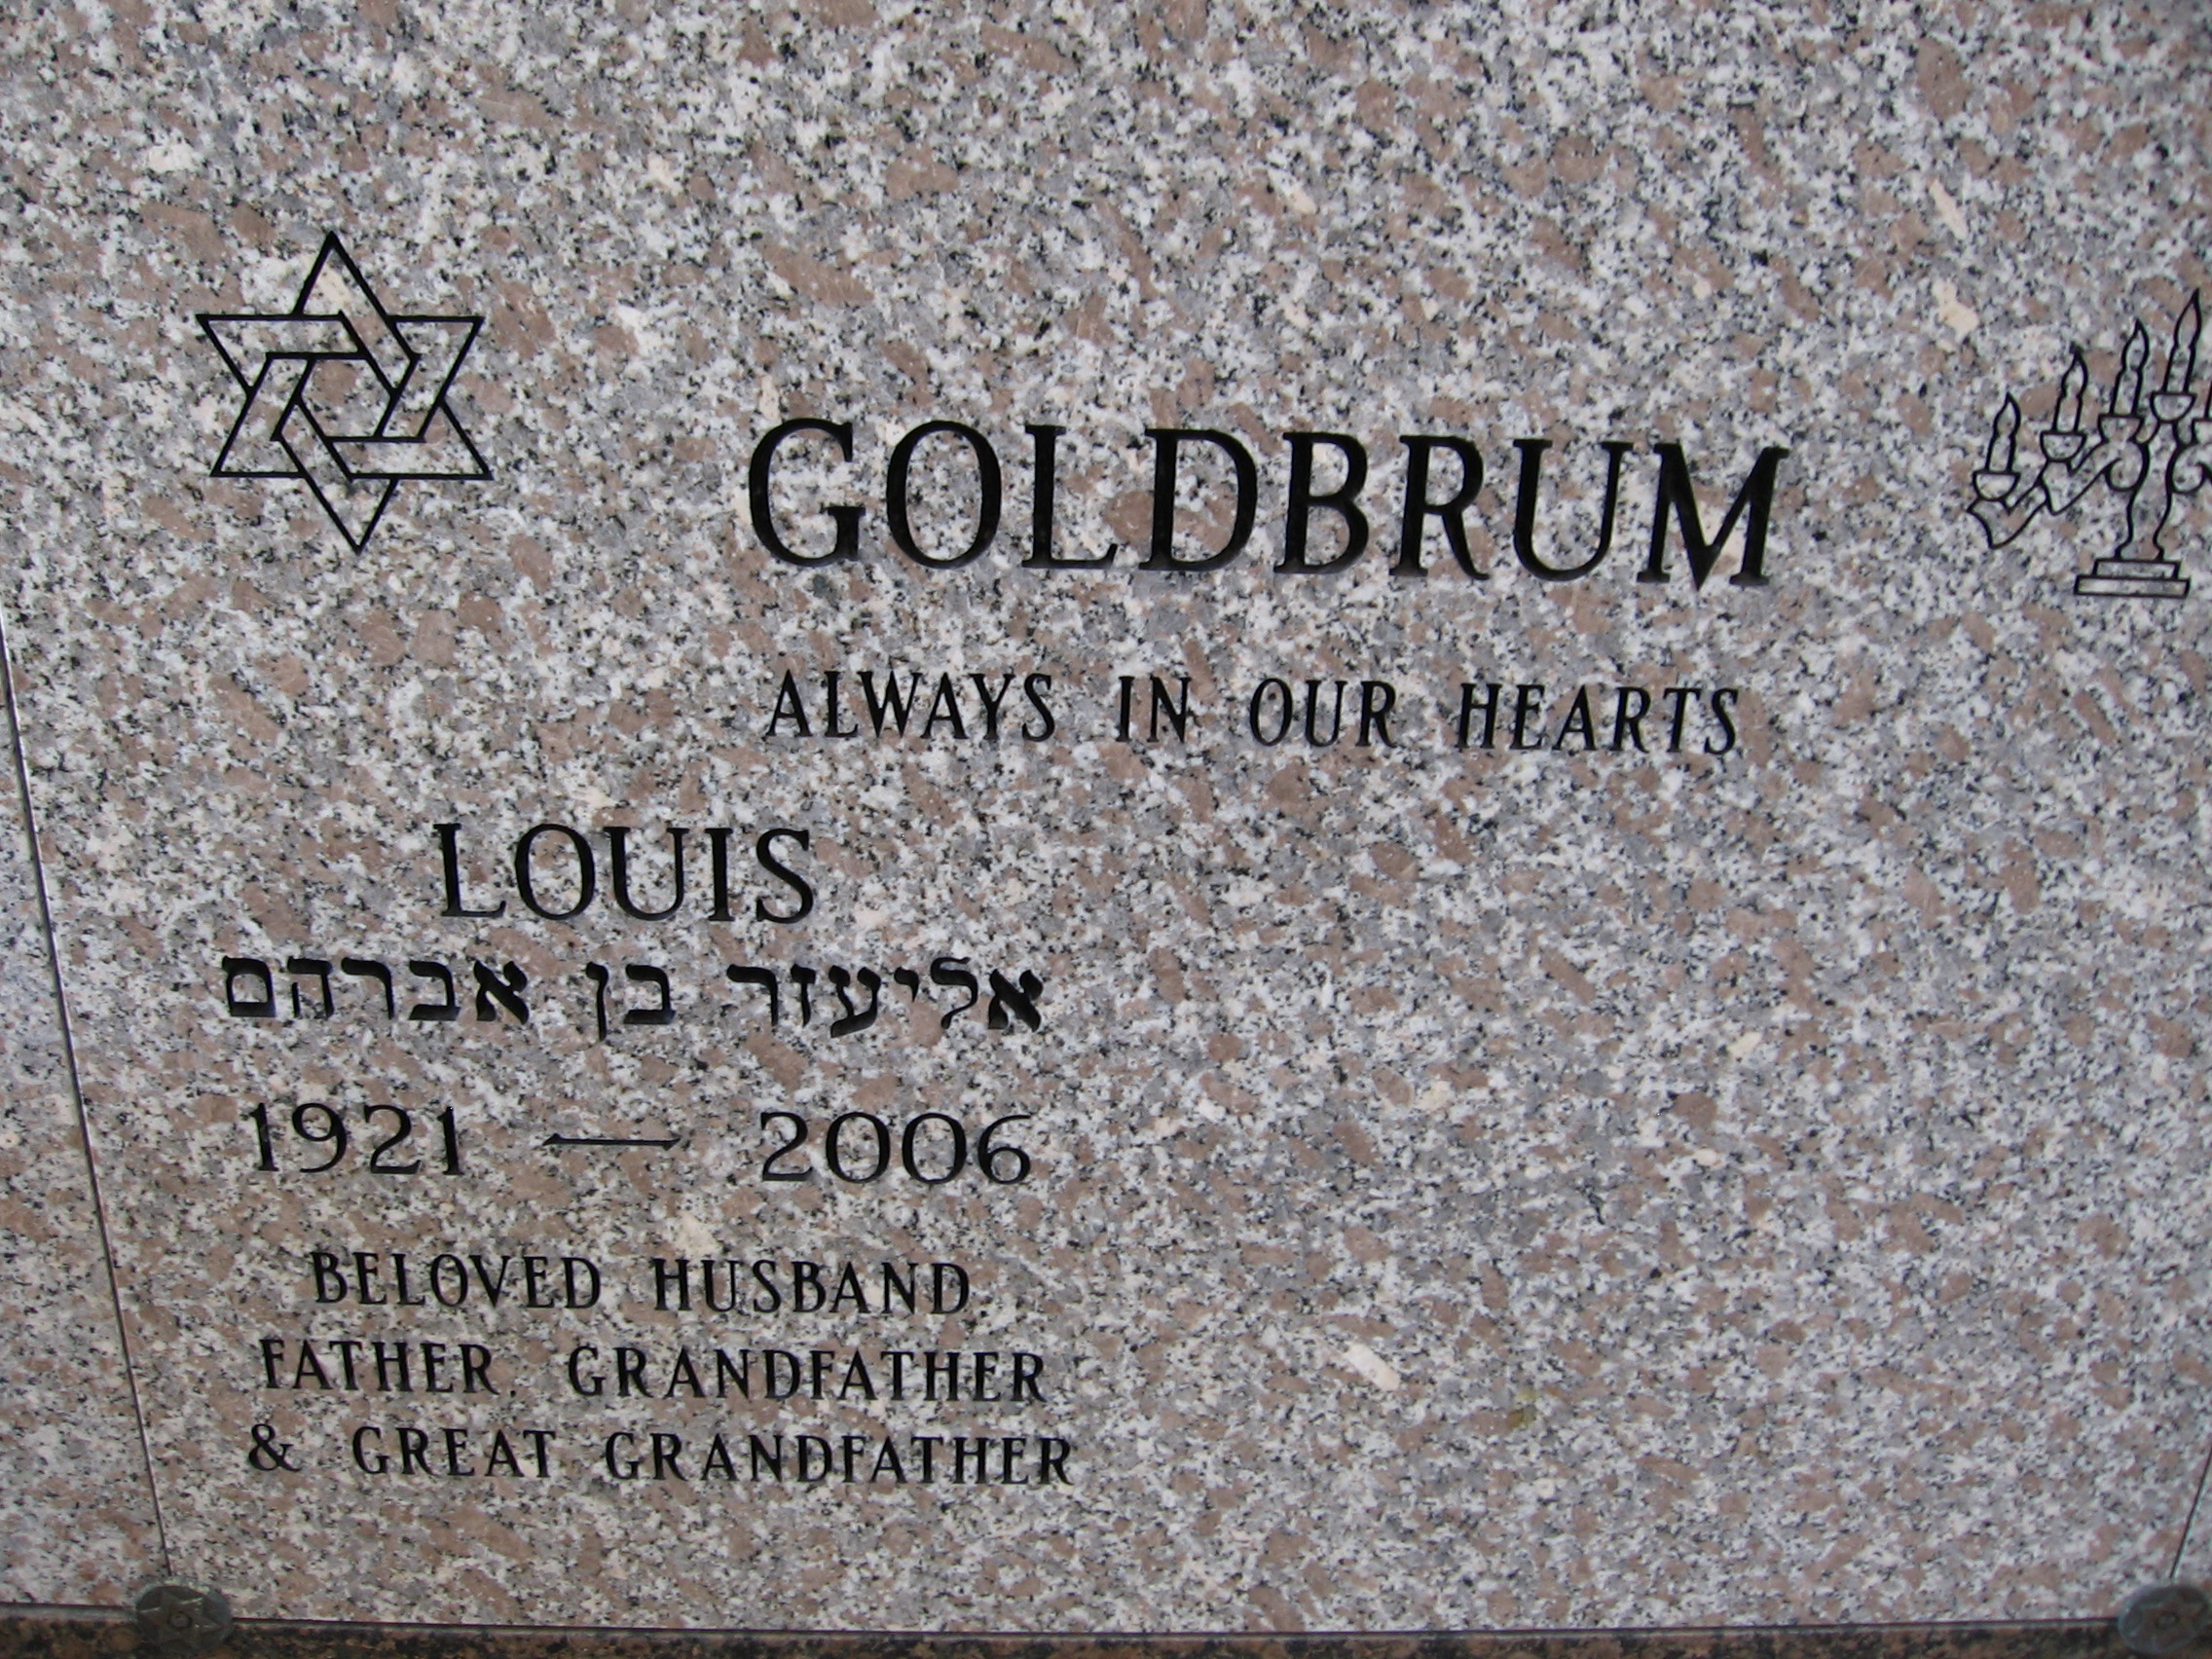 Louis Goldbrum